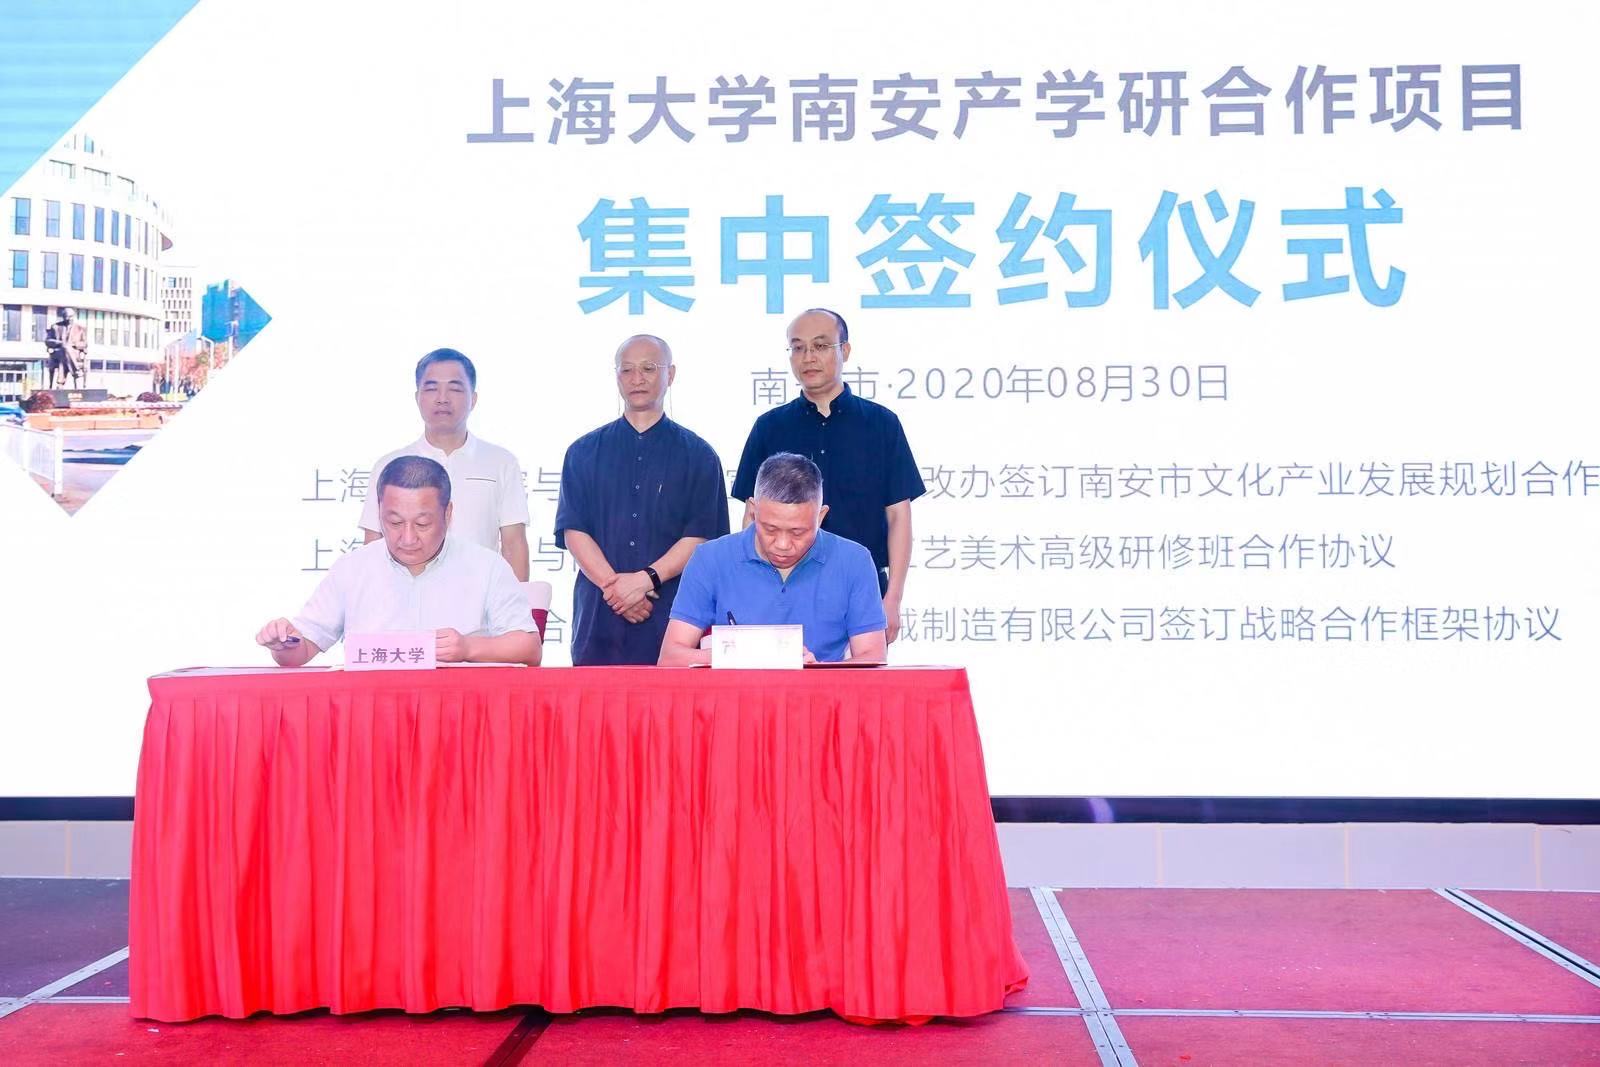 Nhiệt liệt chào mừng Thỏa thuận hợp tác chiến lược máy móc-SL Đại học Thượng Hải Lễ ký kết và khai trương Trung tâm nghiên cứu công nghệ kỹ thuật thiết bị bảo vệ môi trường tiên tiến